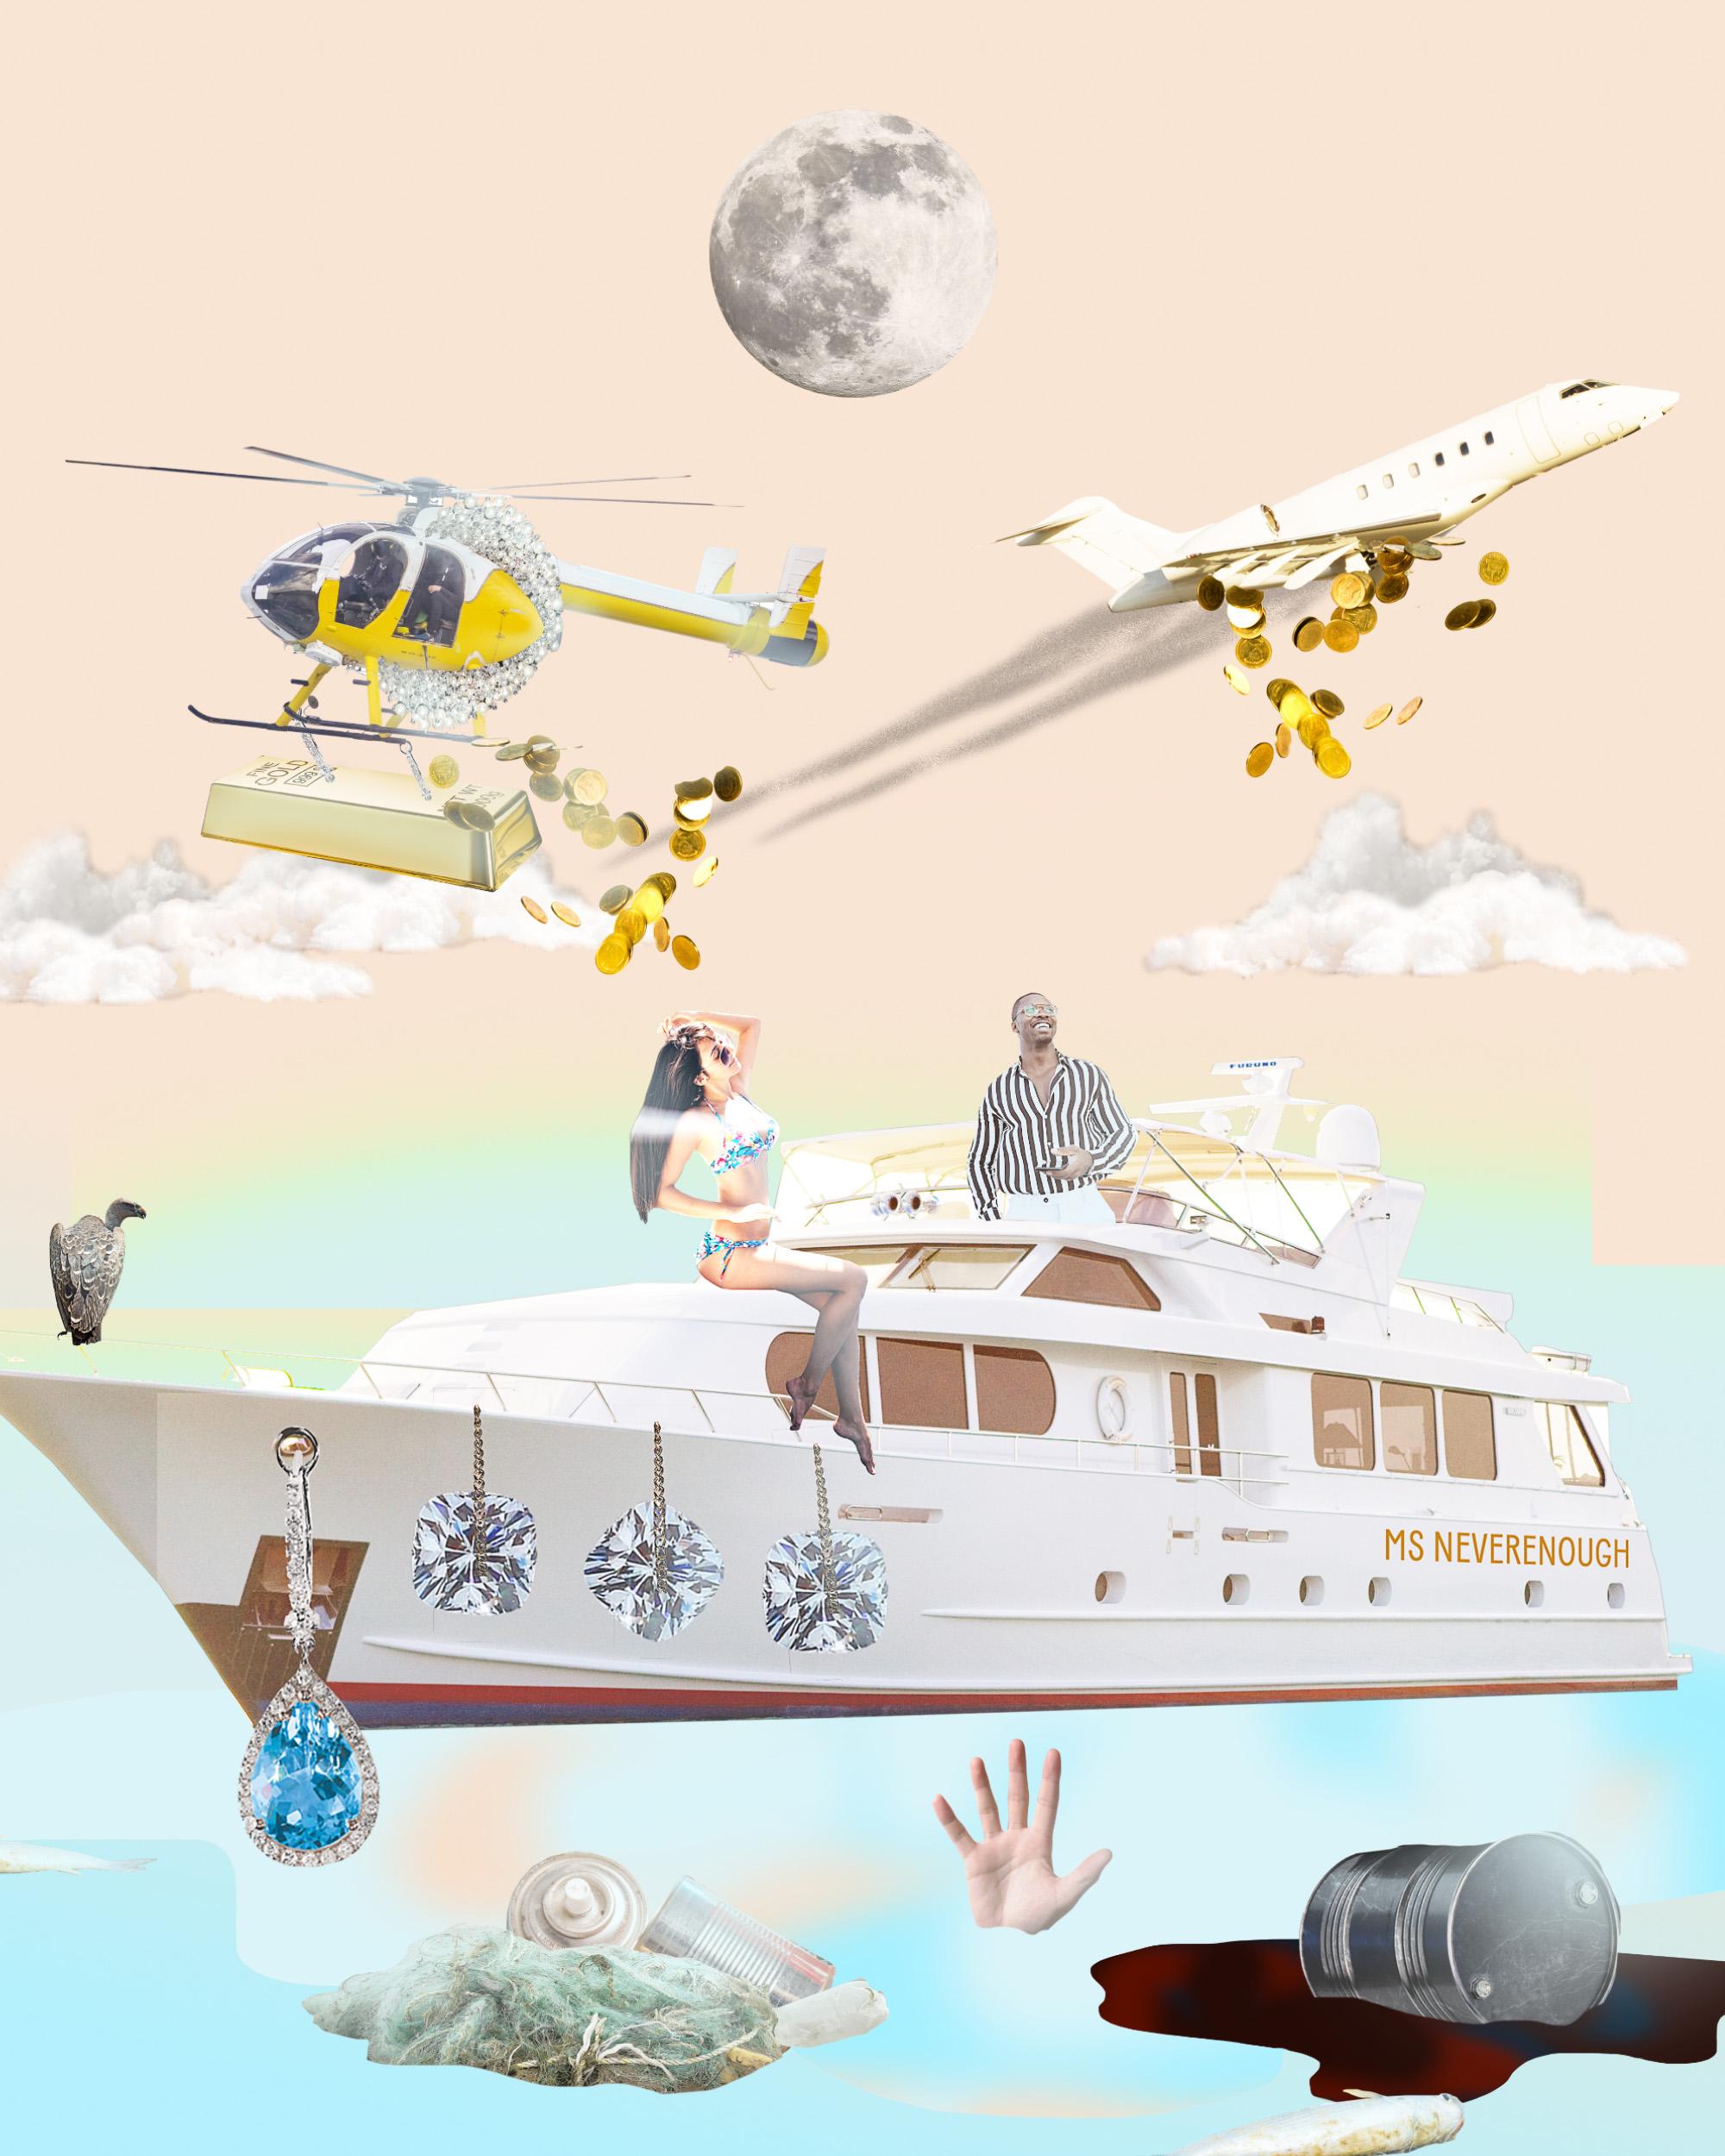 Eine Collage aus einer mit Schmuck behangenen Luxusyacht und einem Flieger sowie einem Hubschrauber, die Geld abwerfen